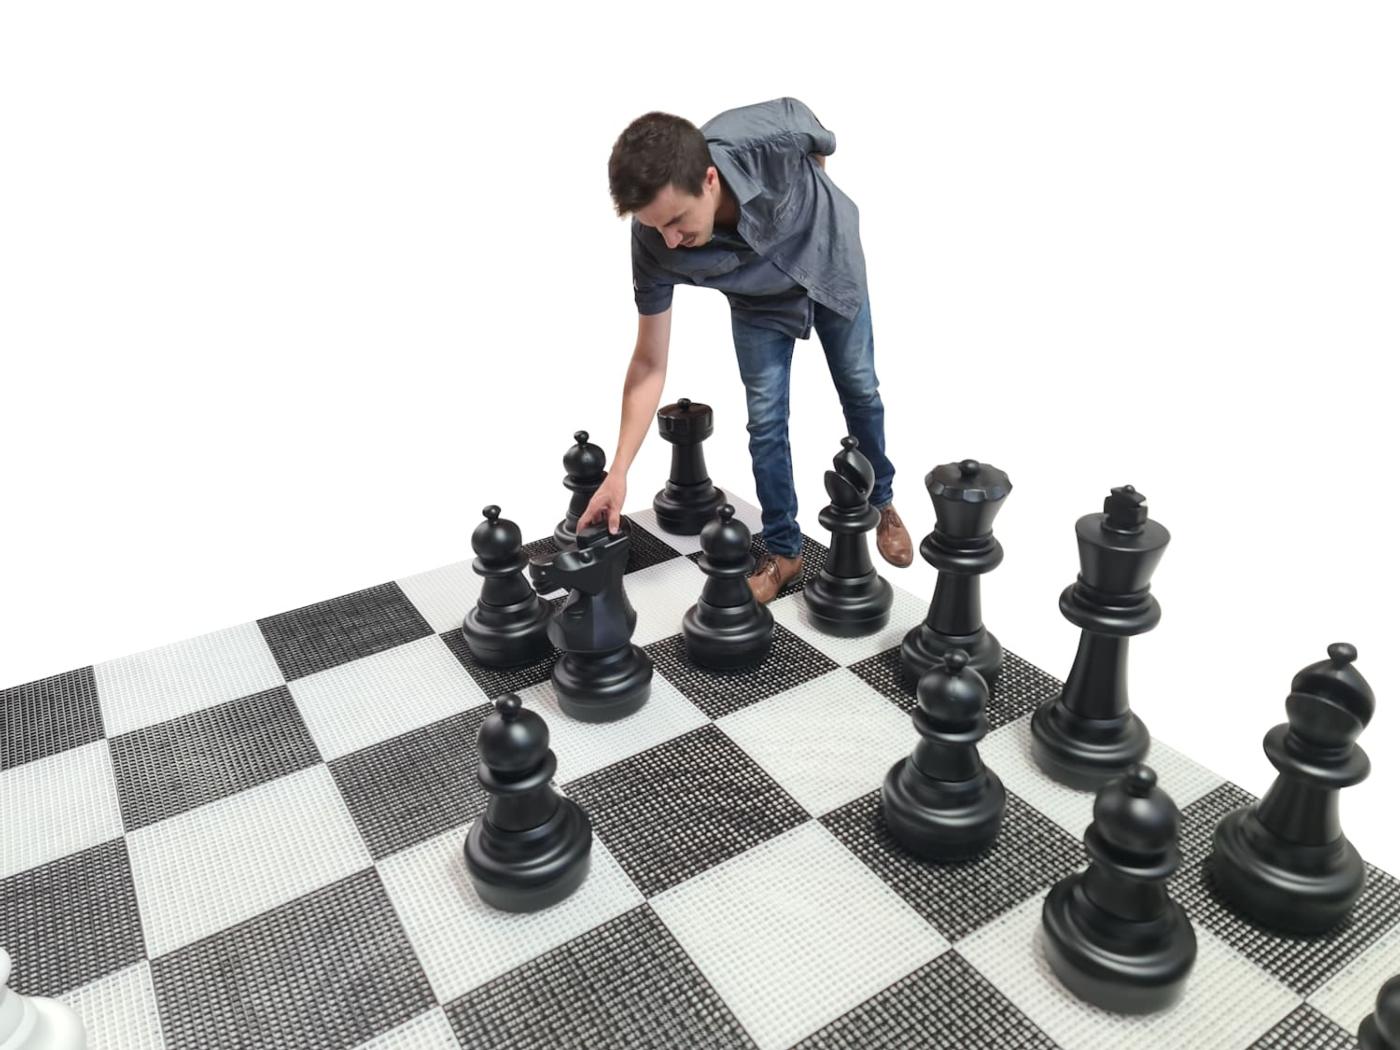 Juego de ajedrez gigante con tablero rígido gigante incluido juego completo sobre tablero con jugador